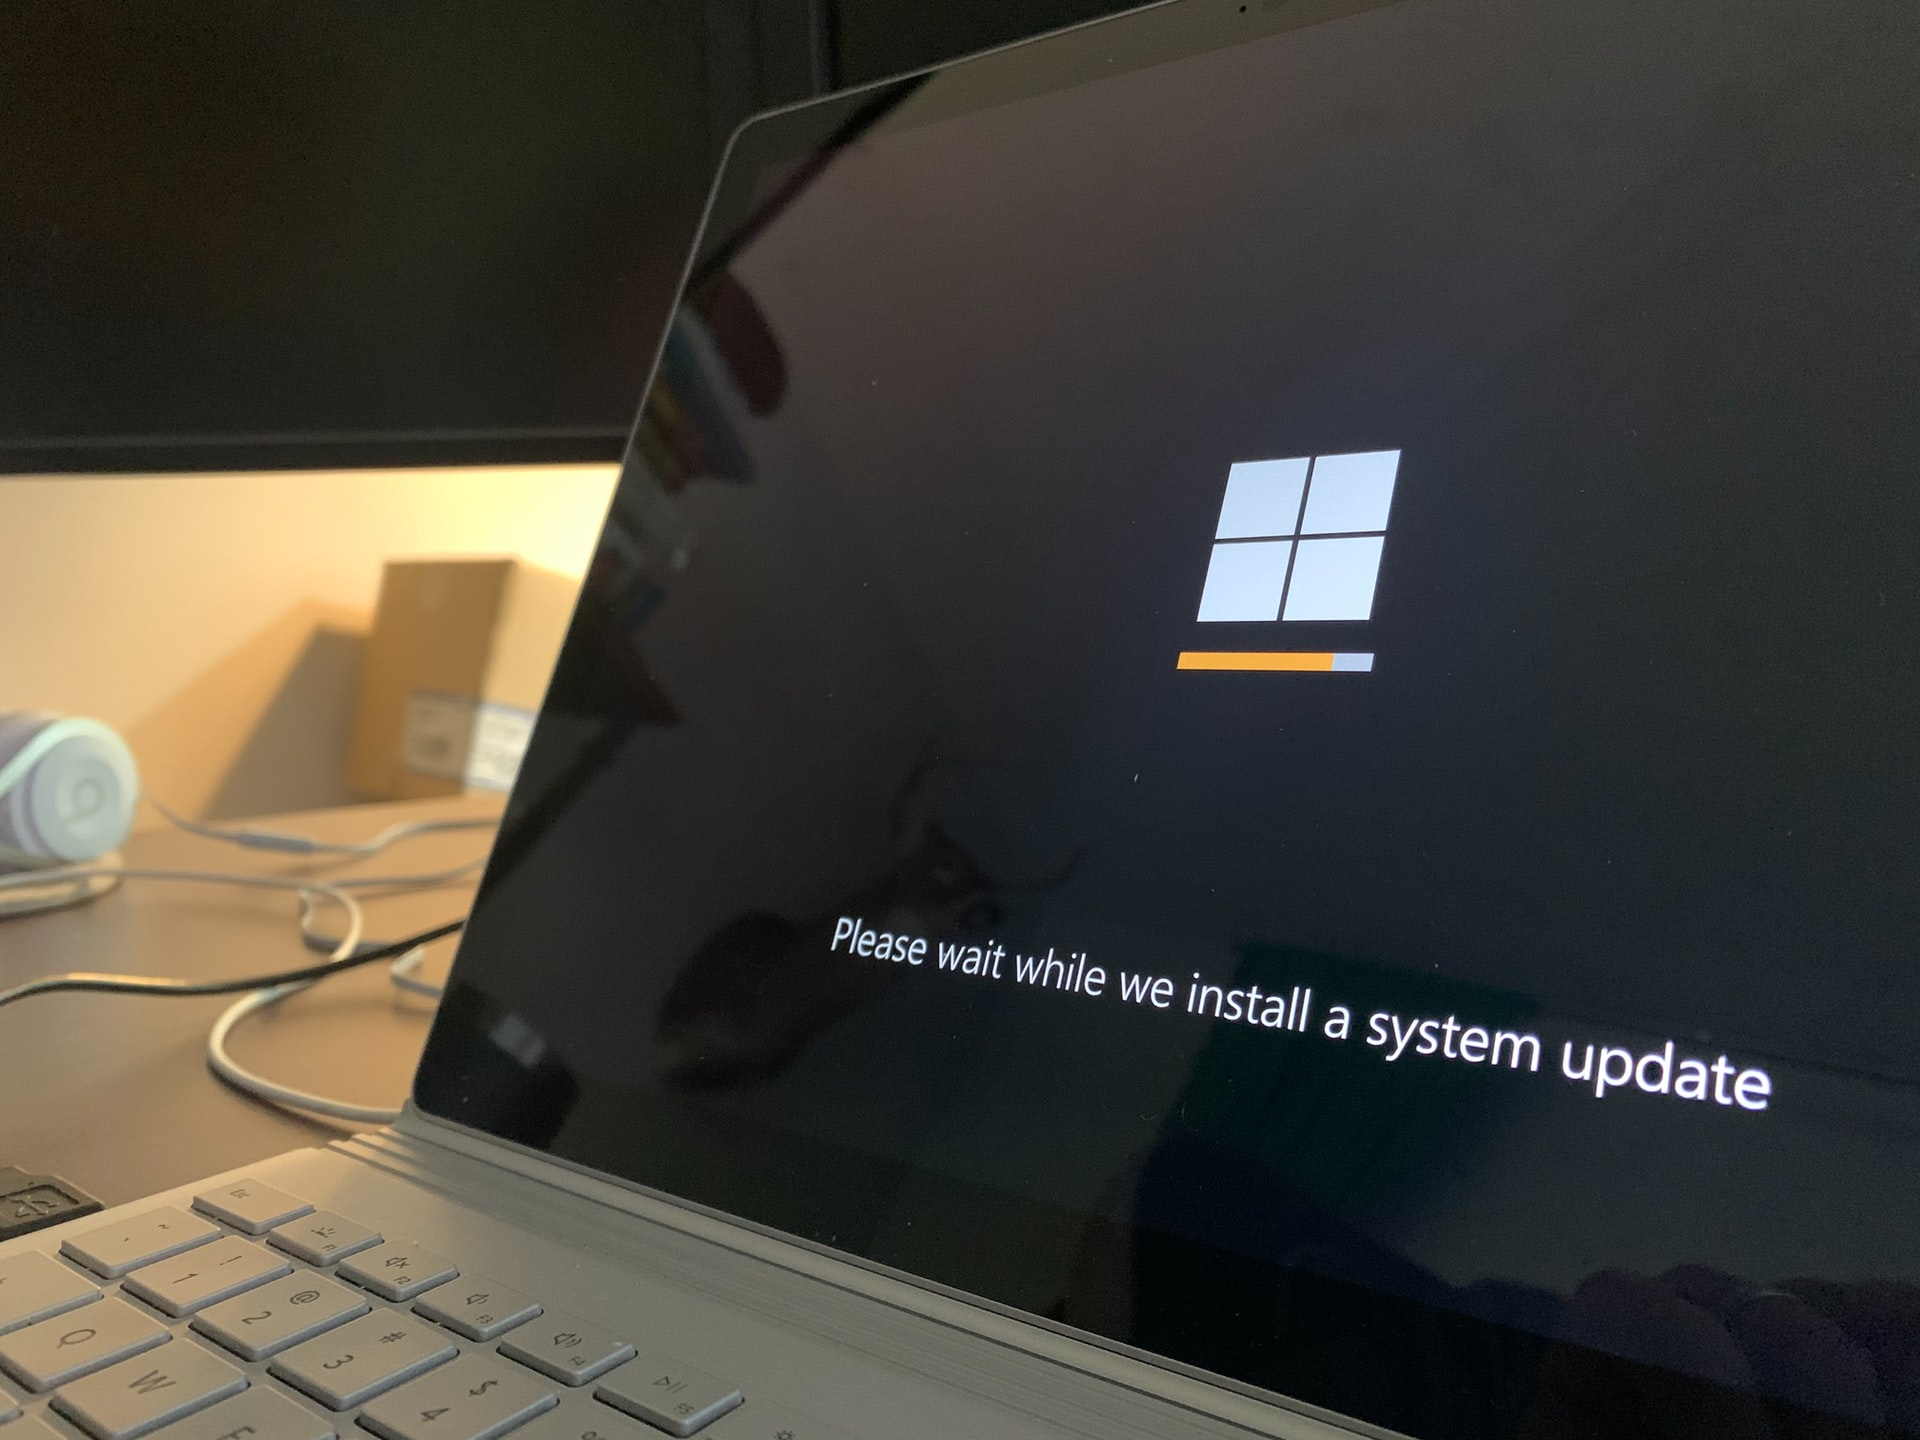 Non solo Windows 11: Microsoft ha rilasciato l'aggiornamento Windows 10 21H1 a tutti gli utenti